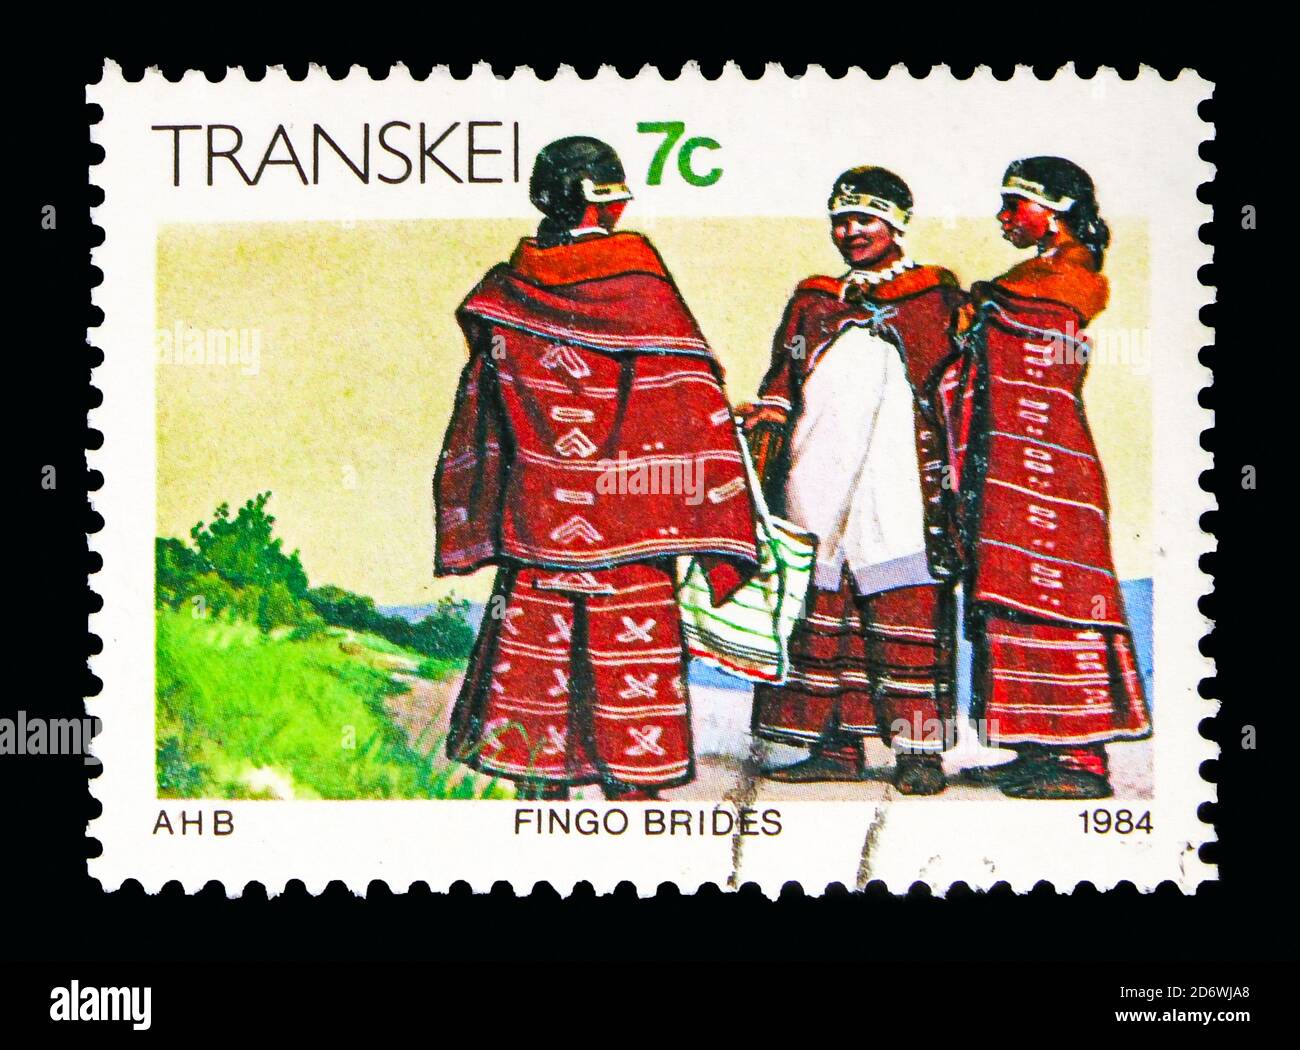 MOSCÚ, RUSIA - 13 DE MAYO de 2018: Un sello impreso en Sudáfrica, patrias, muestra a Fingo Brides, serie Transkei, alrededor de 1984 Foto de stock